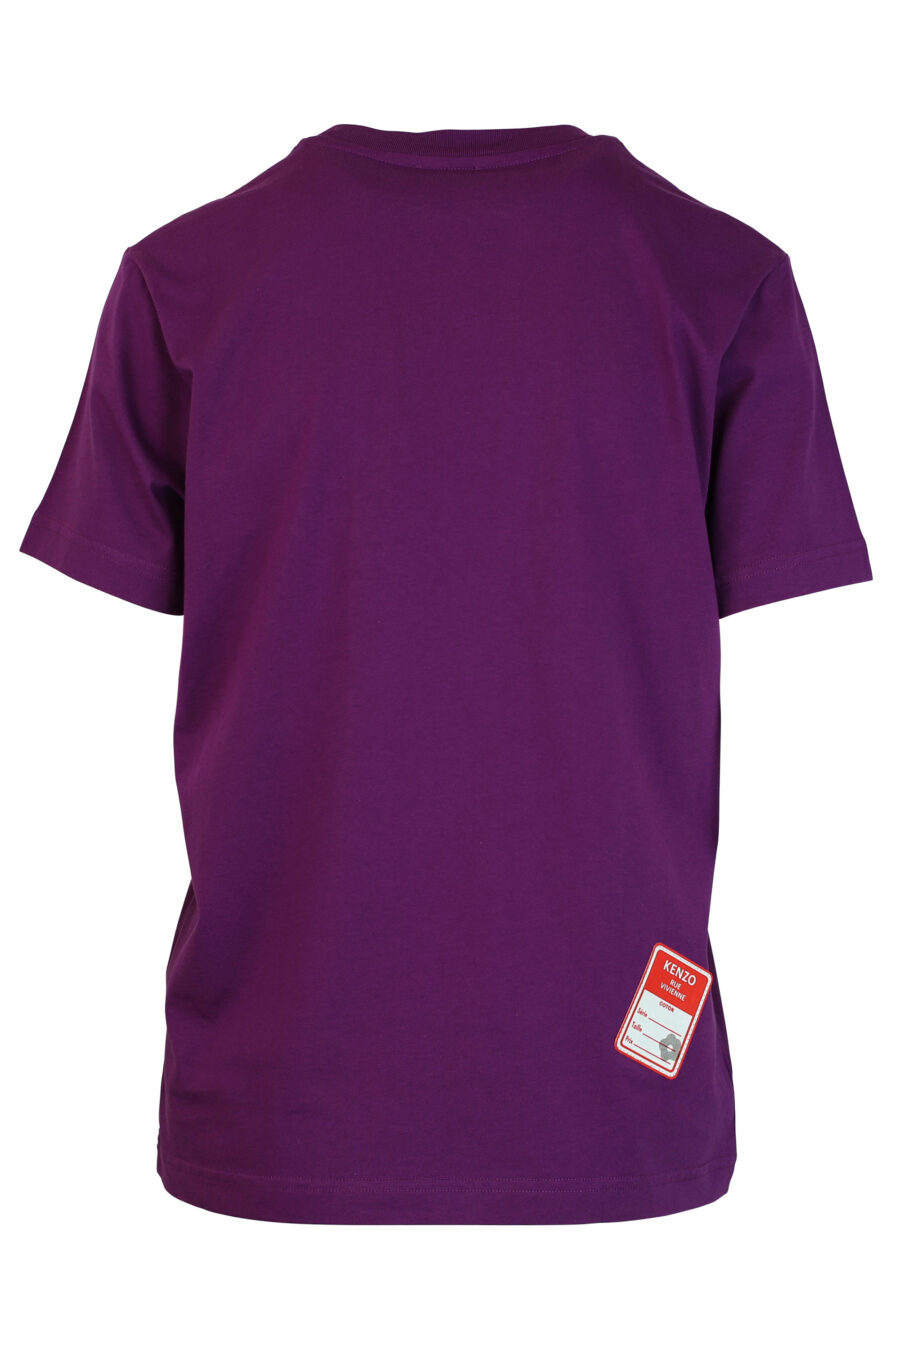 Camiseta violeta con maxilogo "rue vivienne" blanco - 3612230461253 2